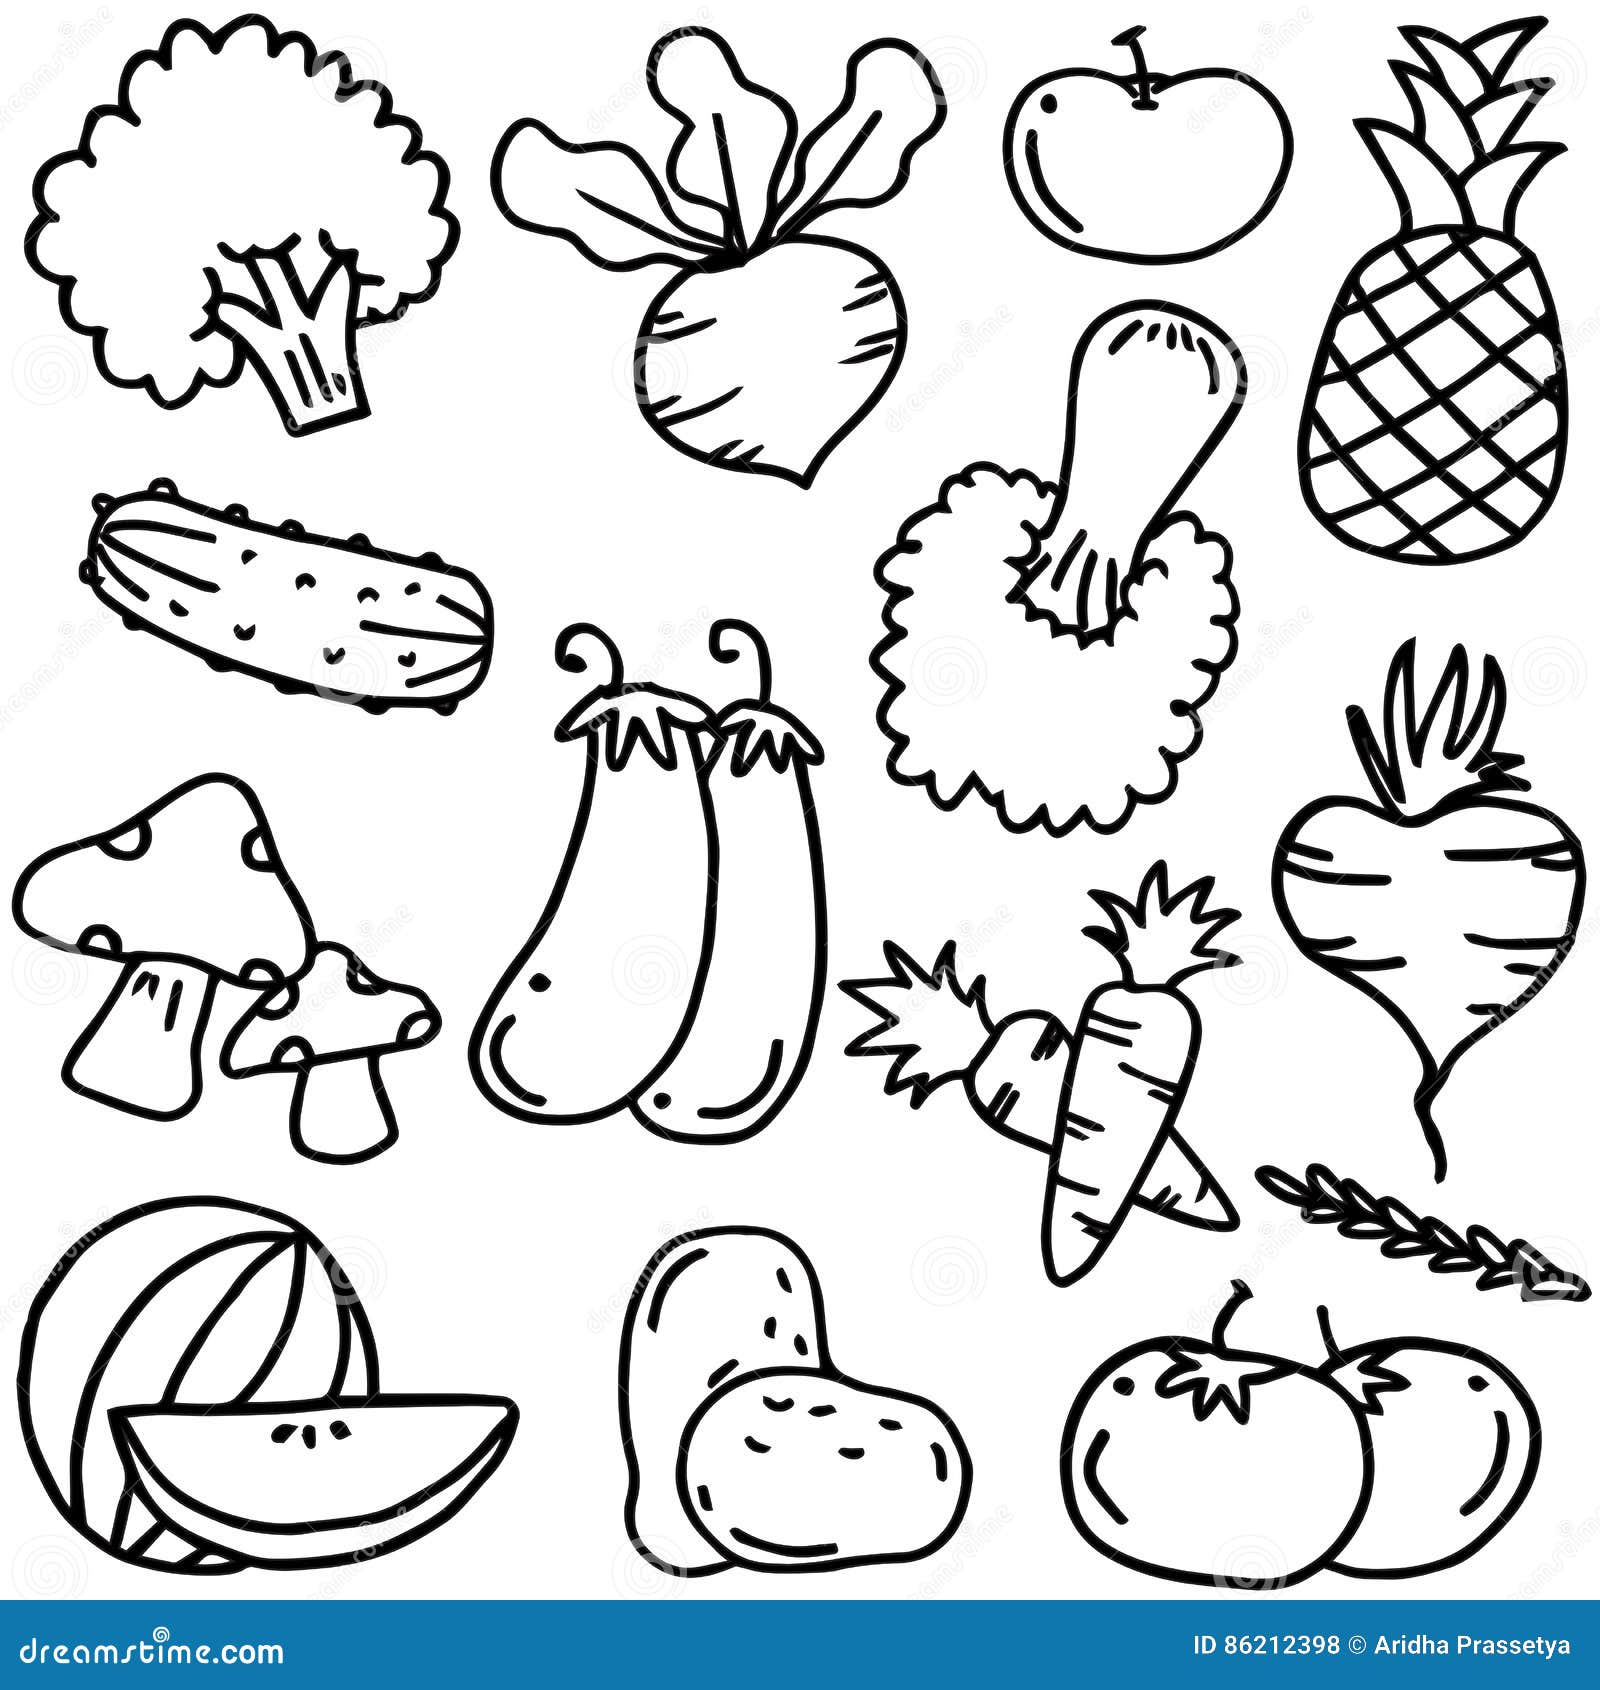 Drawing Vegetables Cartoon Images - Vegetarian Foody's